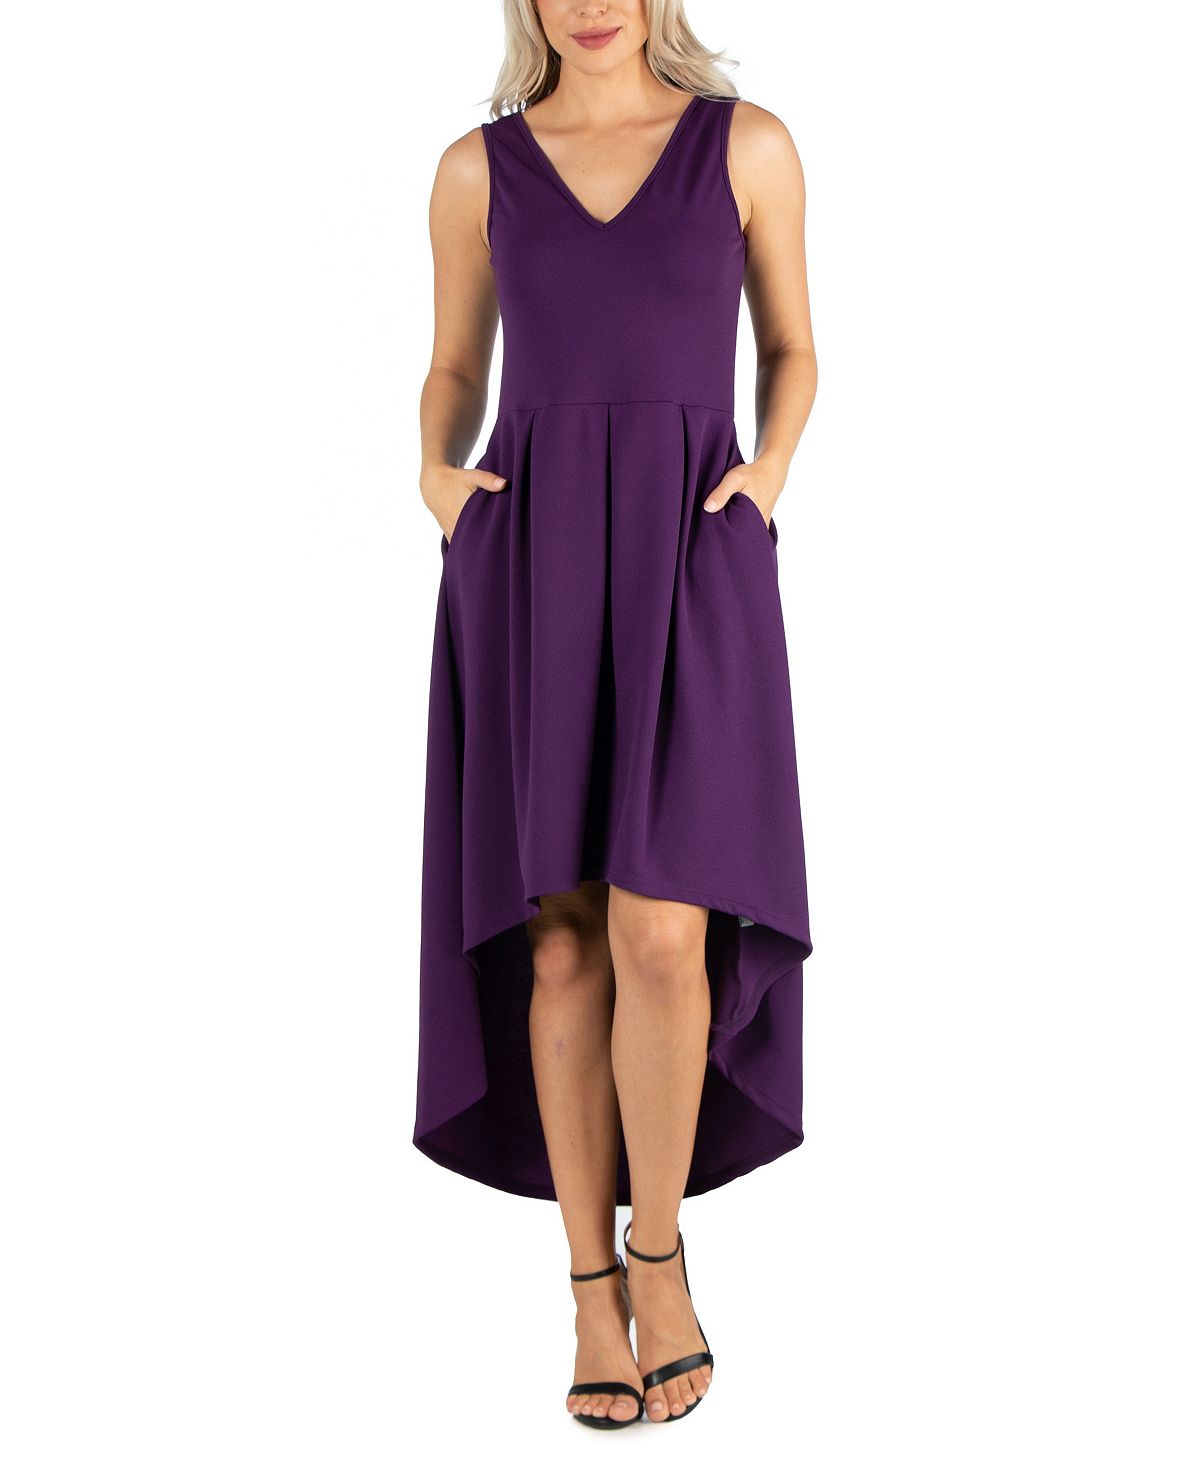 Женское платье без рукавов с завышенной талией и расклешенным низом 24seven Comfort Apparel, фиолетовый фото